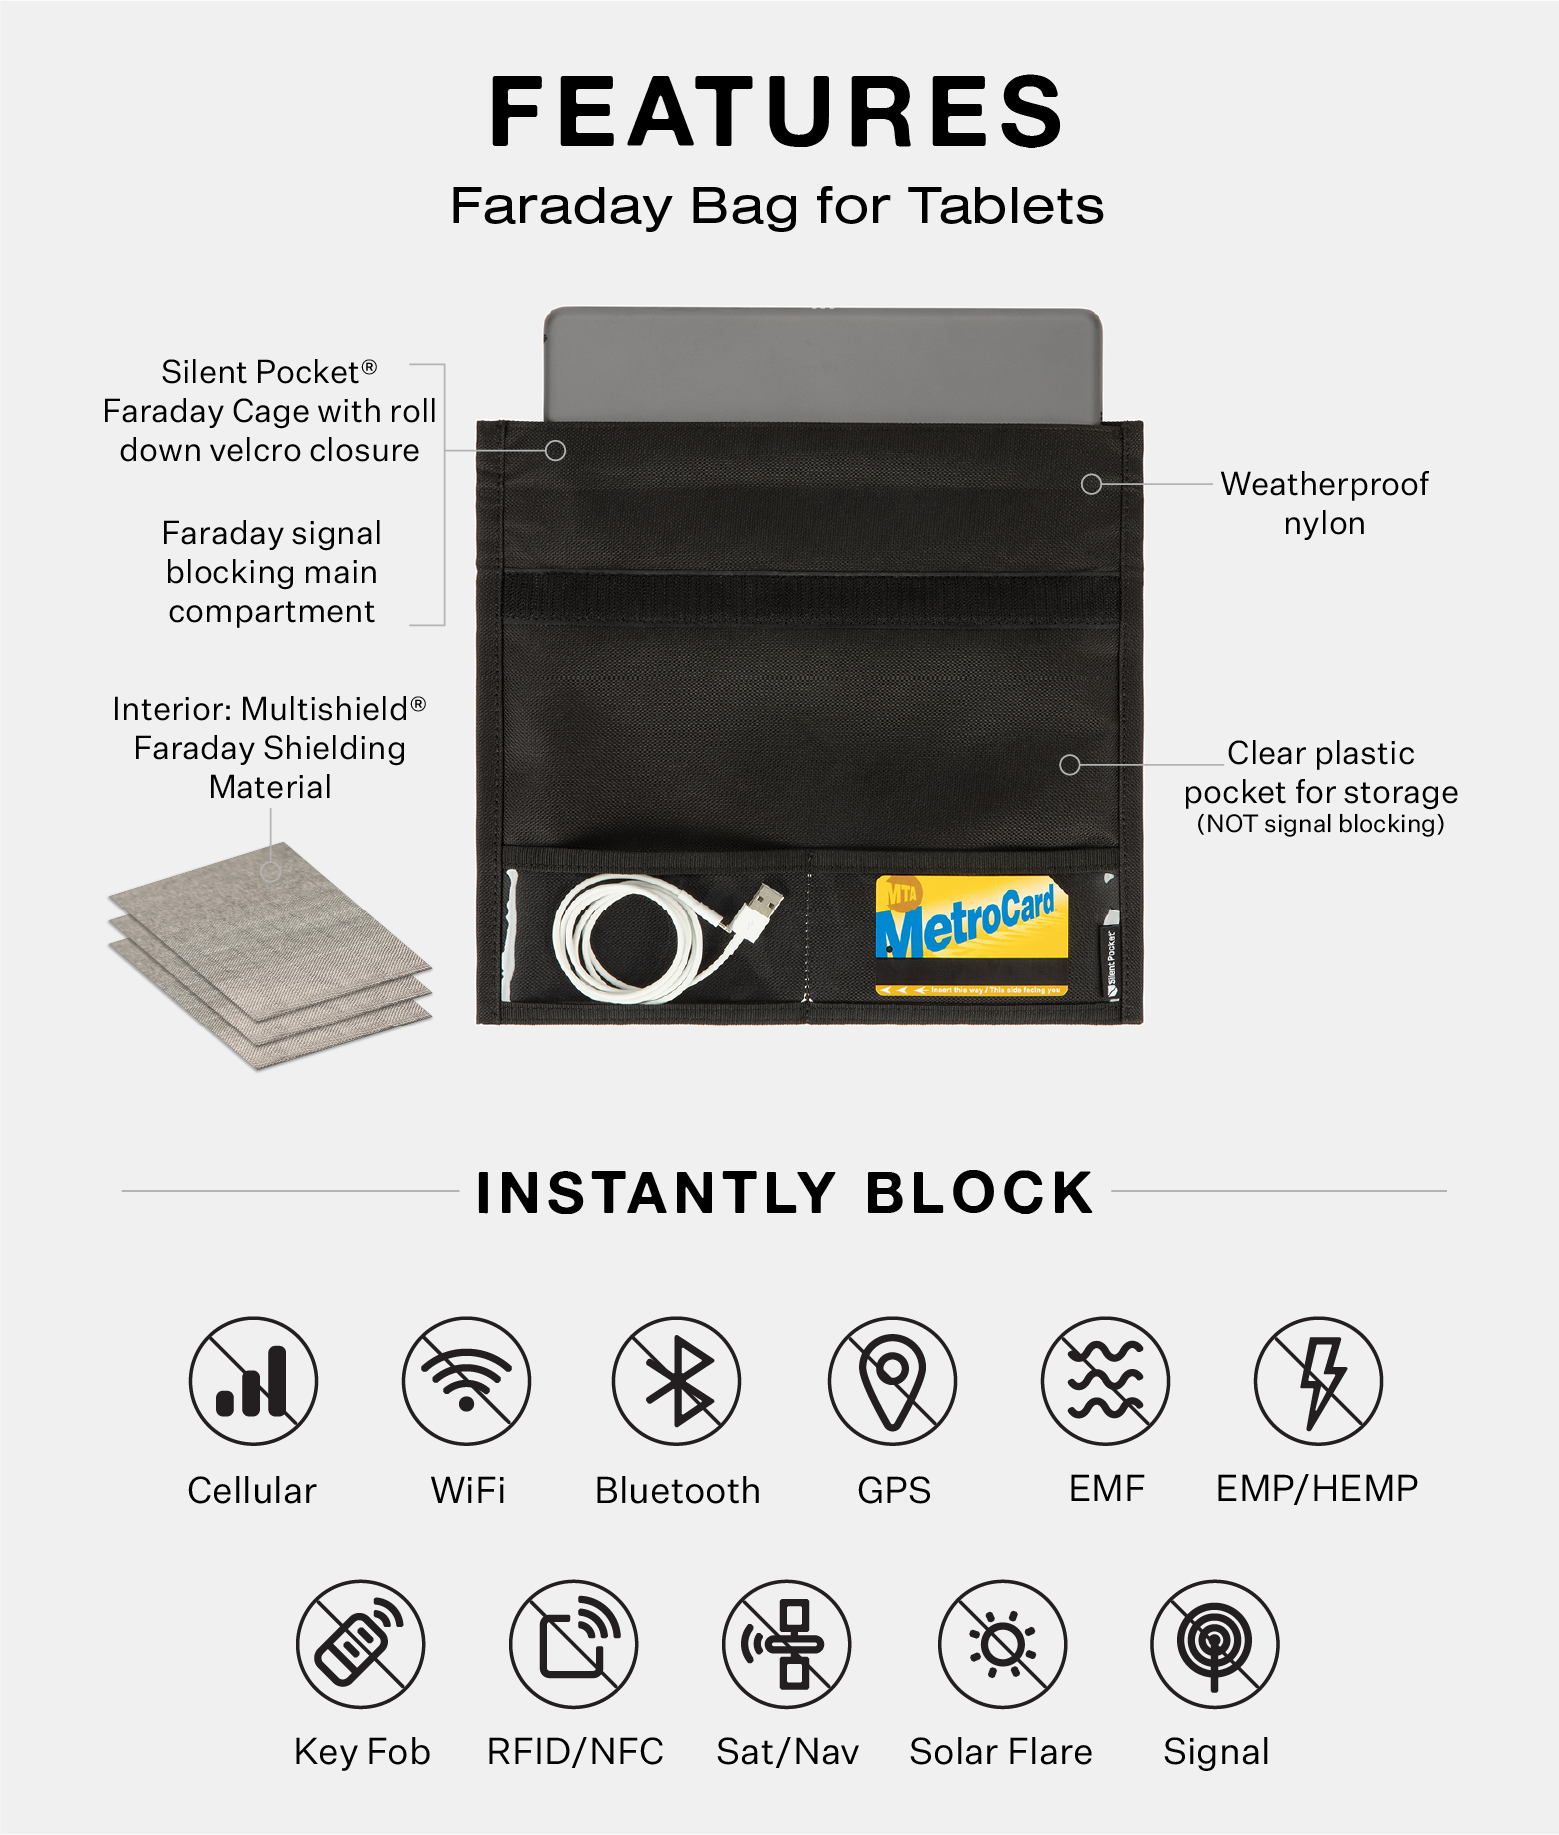 Plastic Zipper Bag White Block Written Small Pill Evenlop Tablet